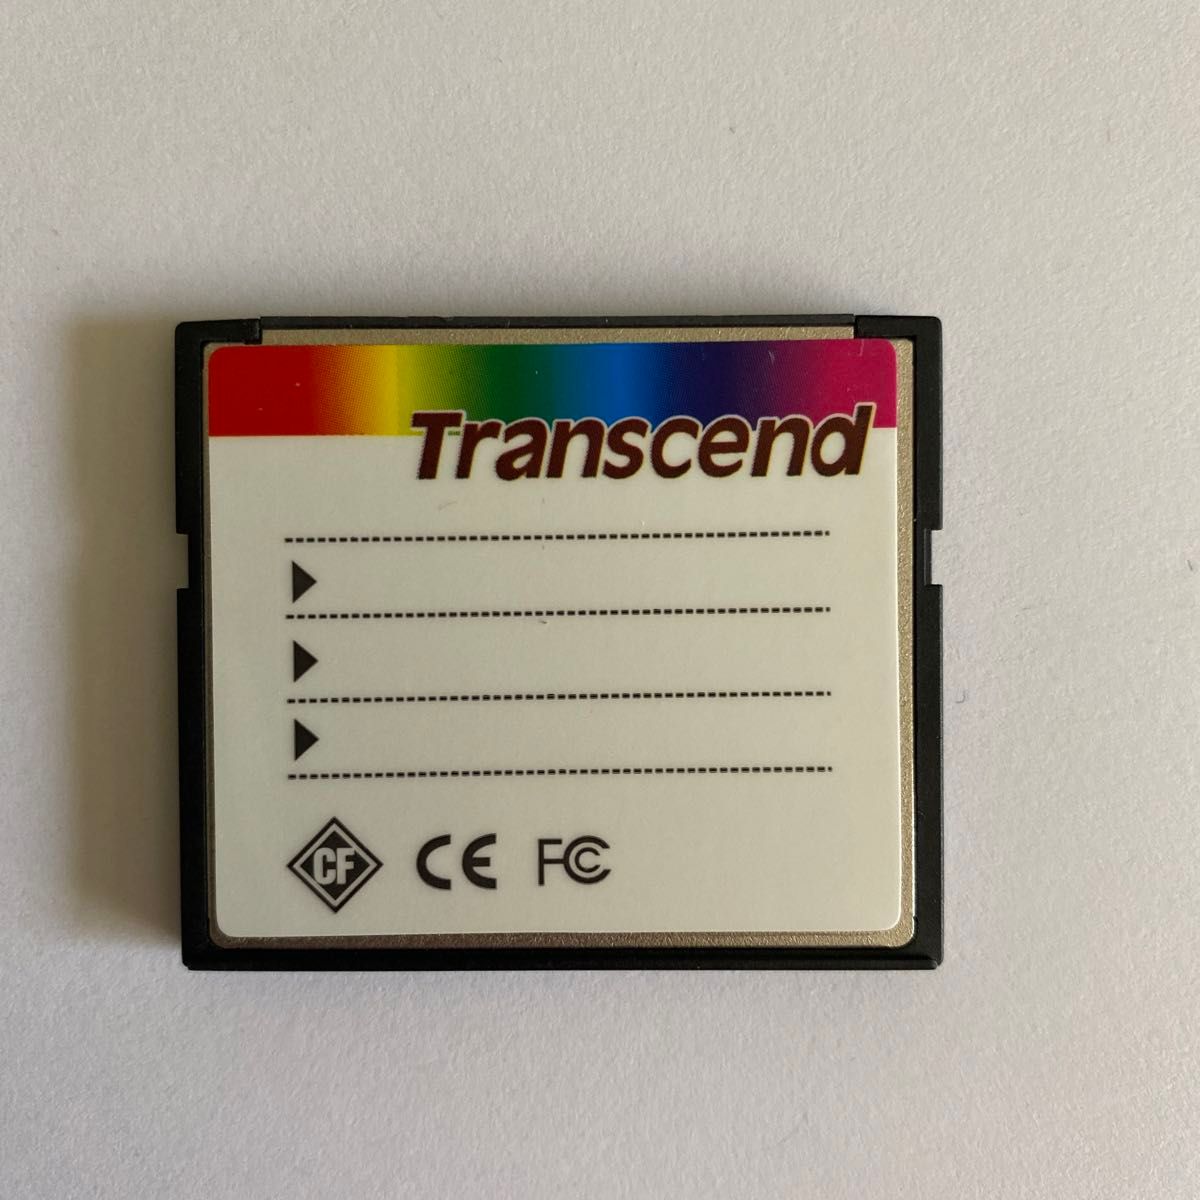 トランセンド 8GB コンパクトフラッシュ Transcend CF 133倍速　ケース付き【匿名配送】【追跡可能】 CFカード